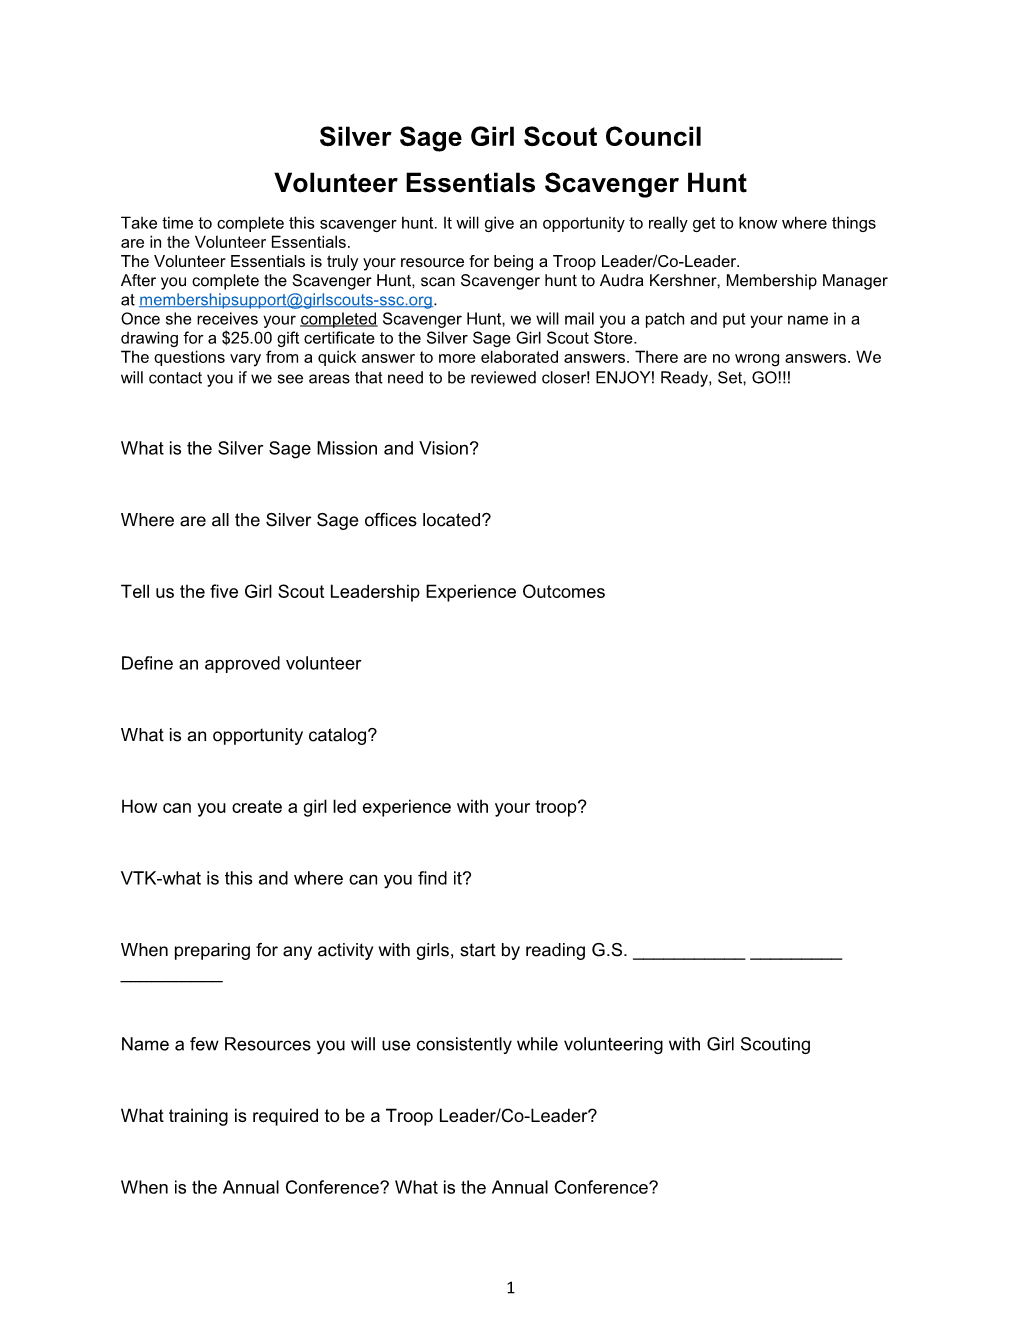 Volunteer Essentials Scavenger Hunt